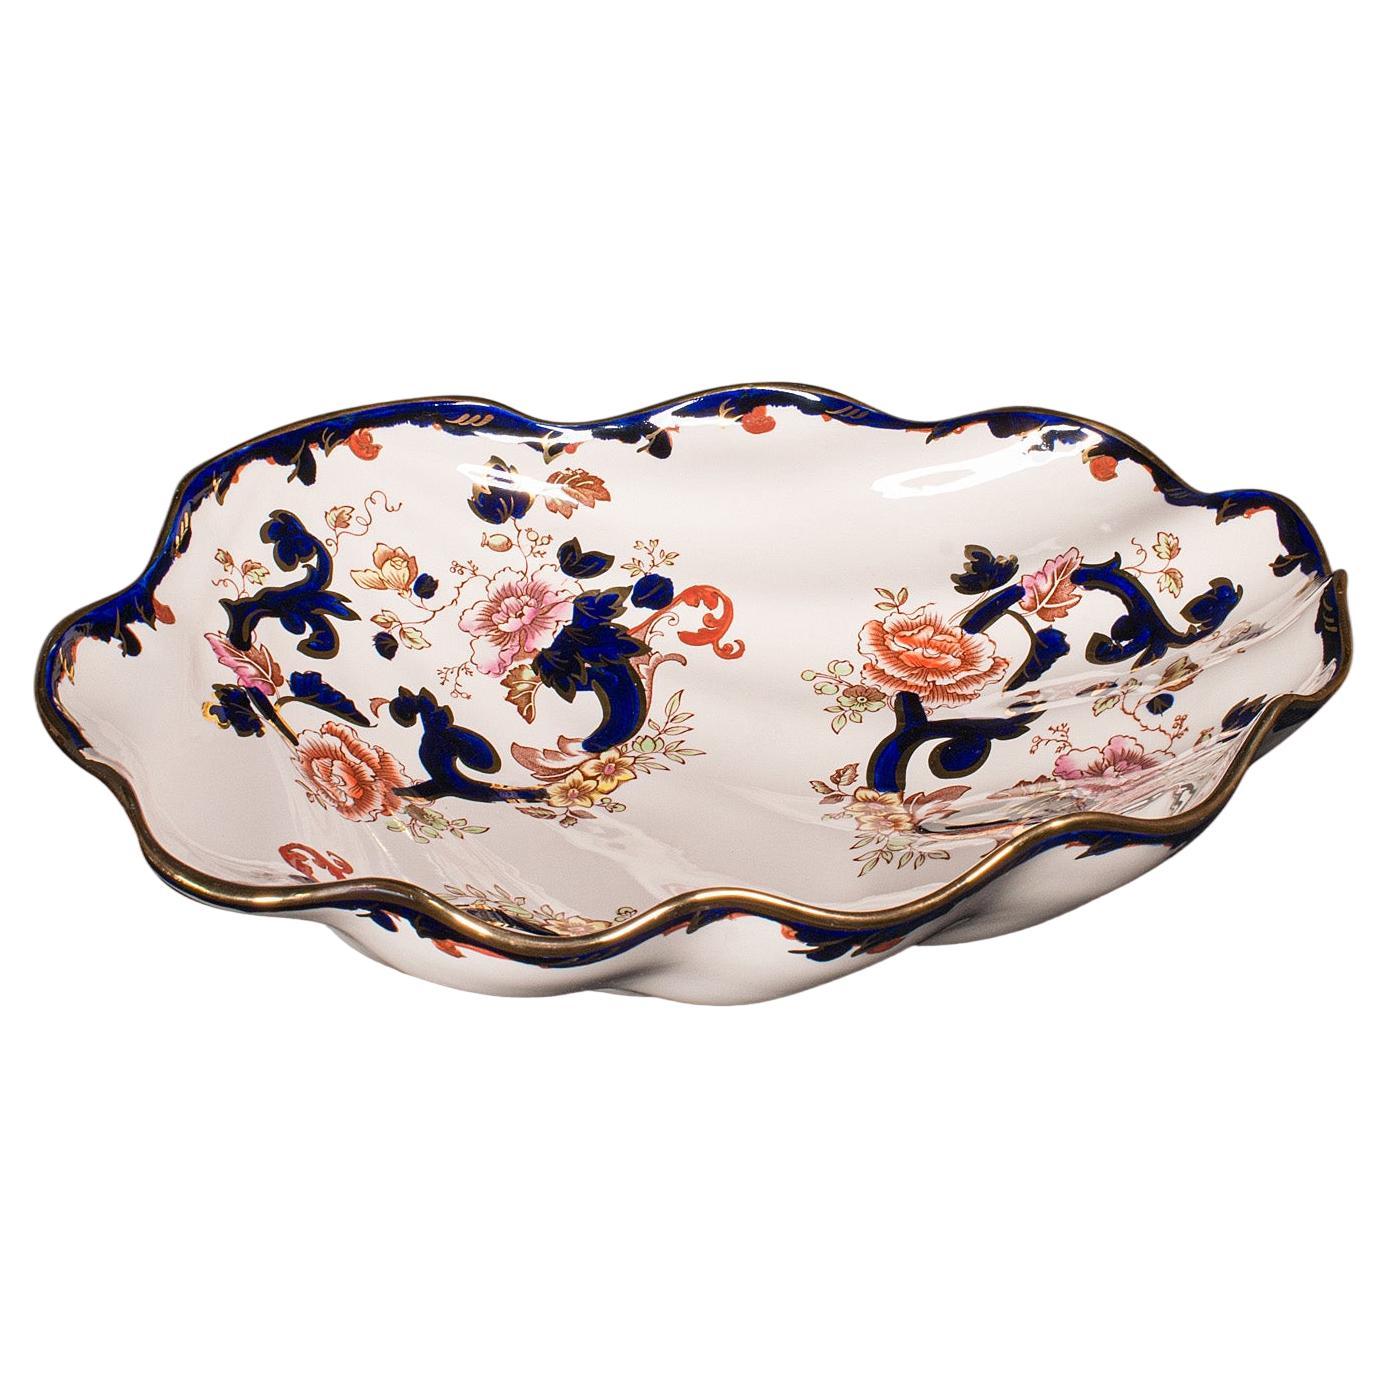 Große Muschelförmige Vintage-Obstschale, englische Keramik, dekorativ, Servierschale